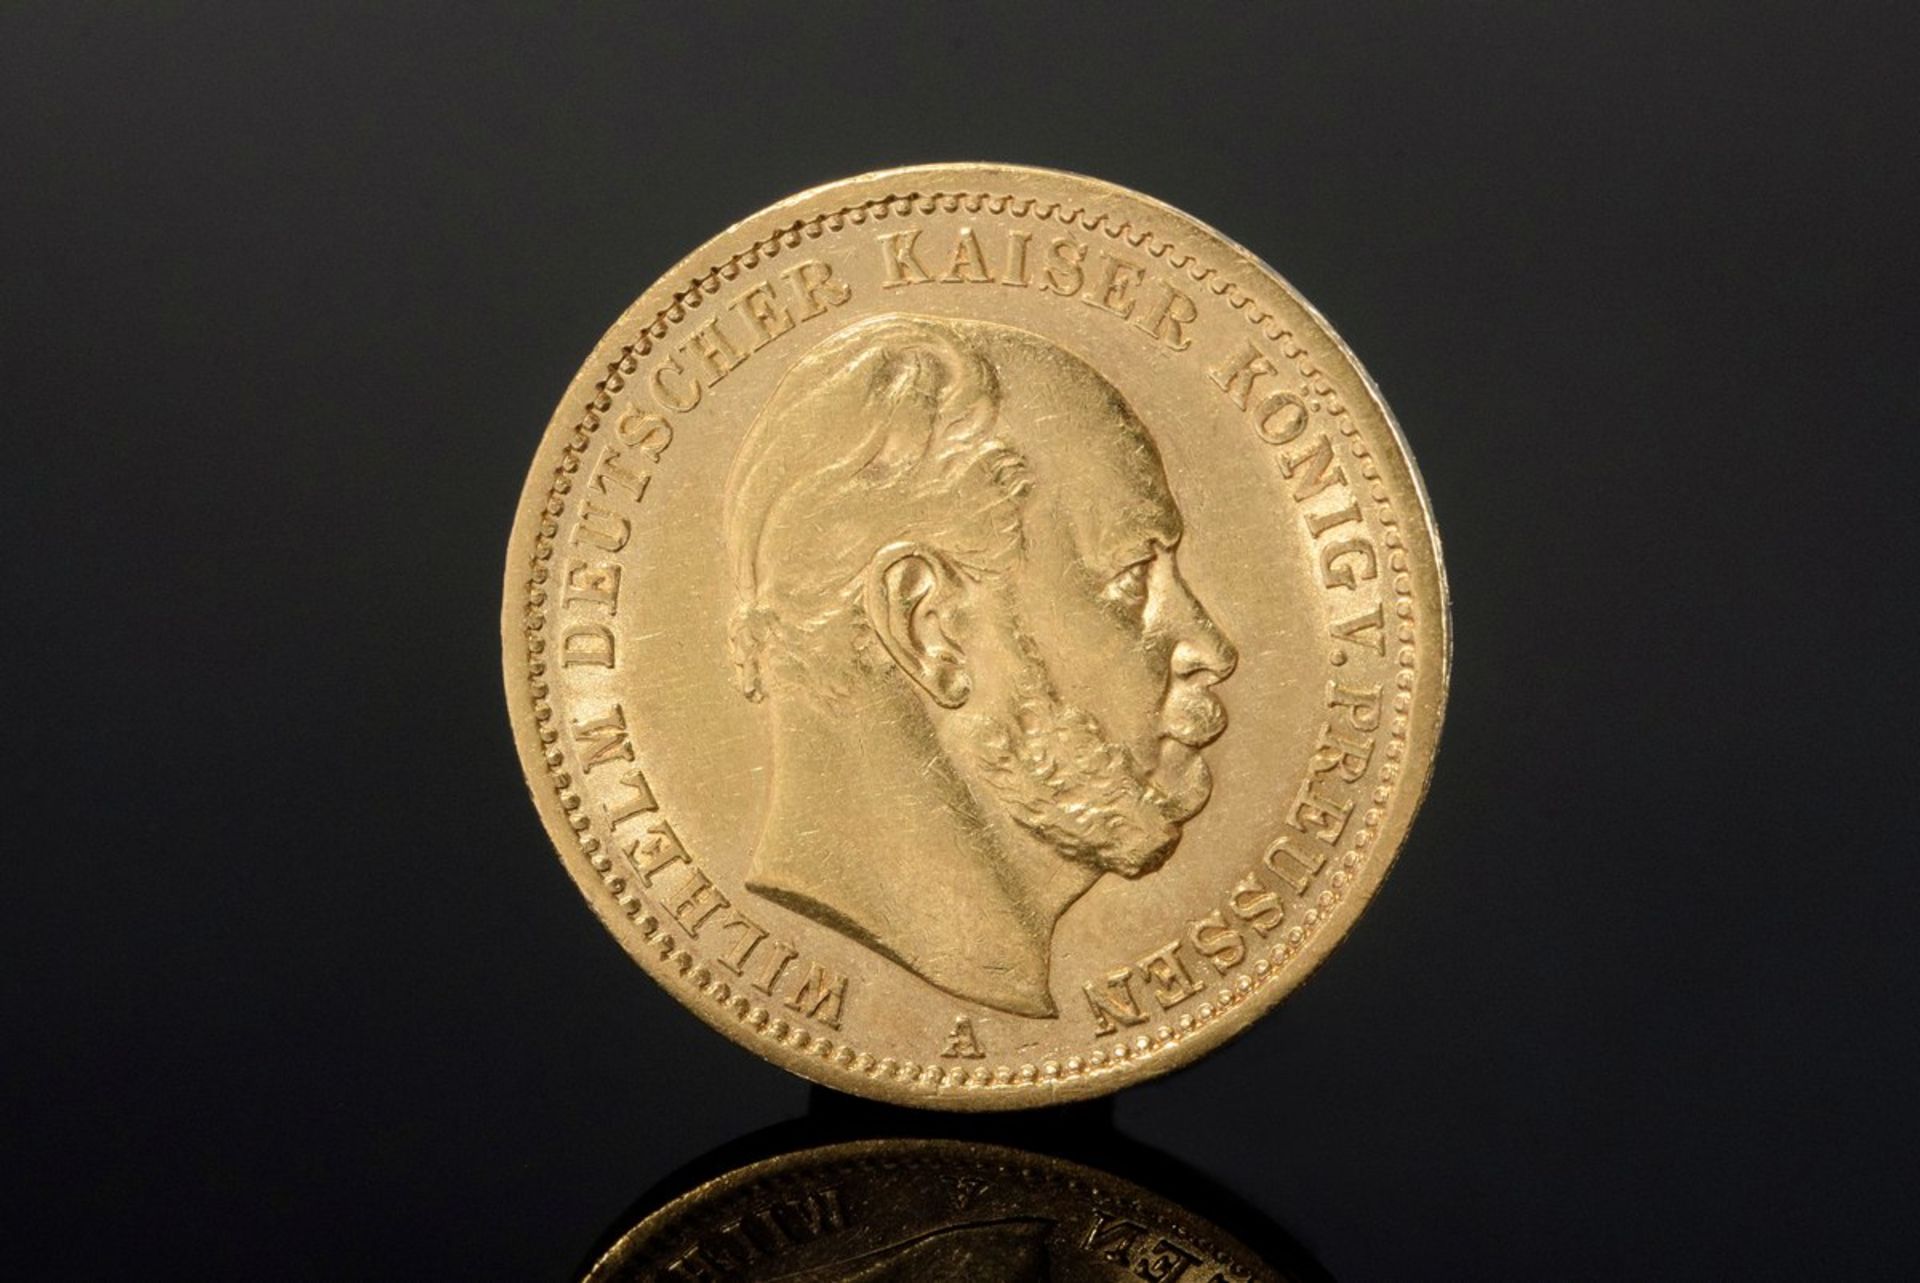 GG 900 Münze, 20 Mark 1873 A, Wilhelm I. Deutscher Kaiser - König von Preussen, 7,9g, Ø 2,2cm GG 900